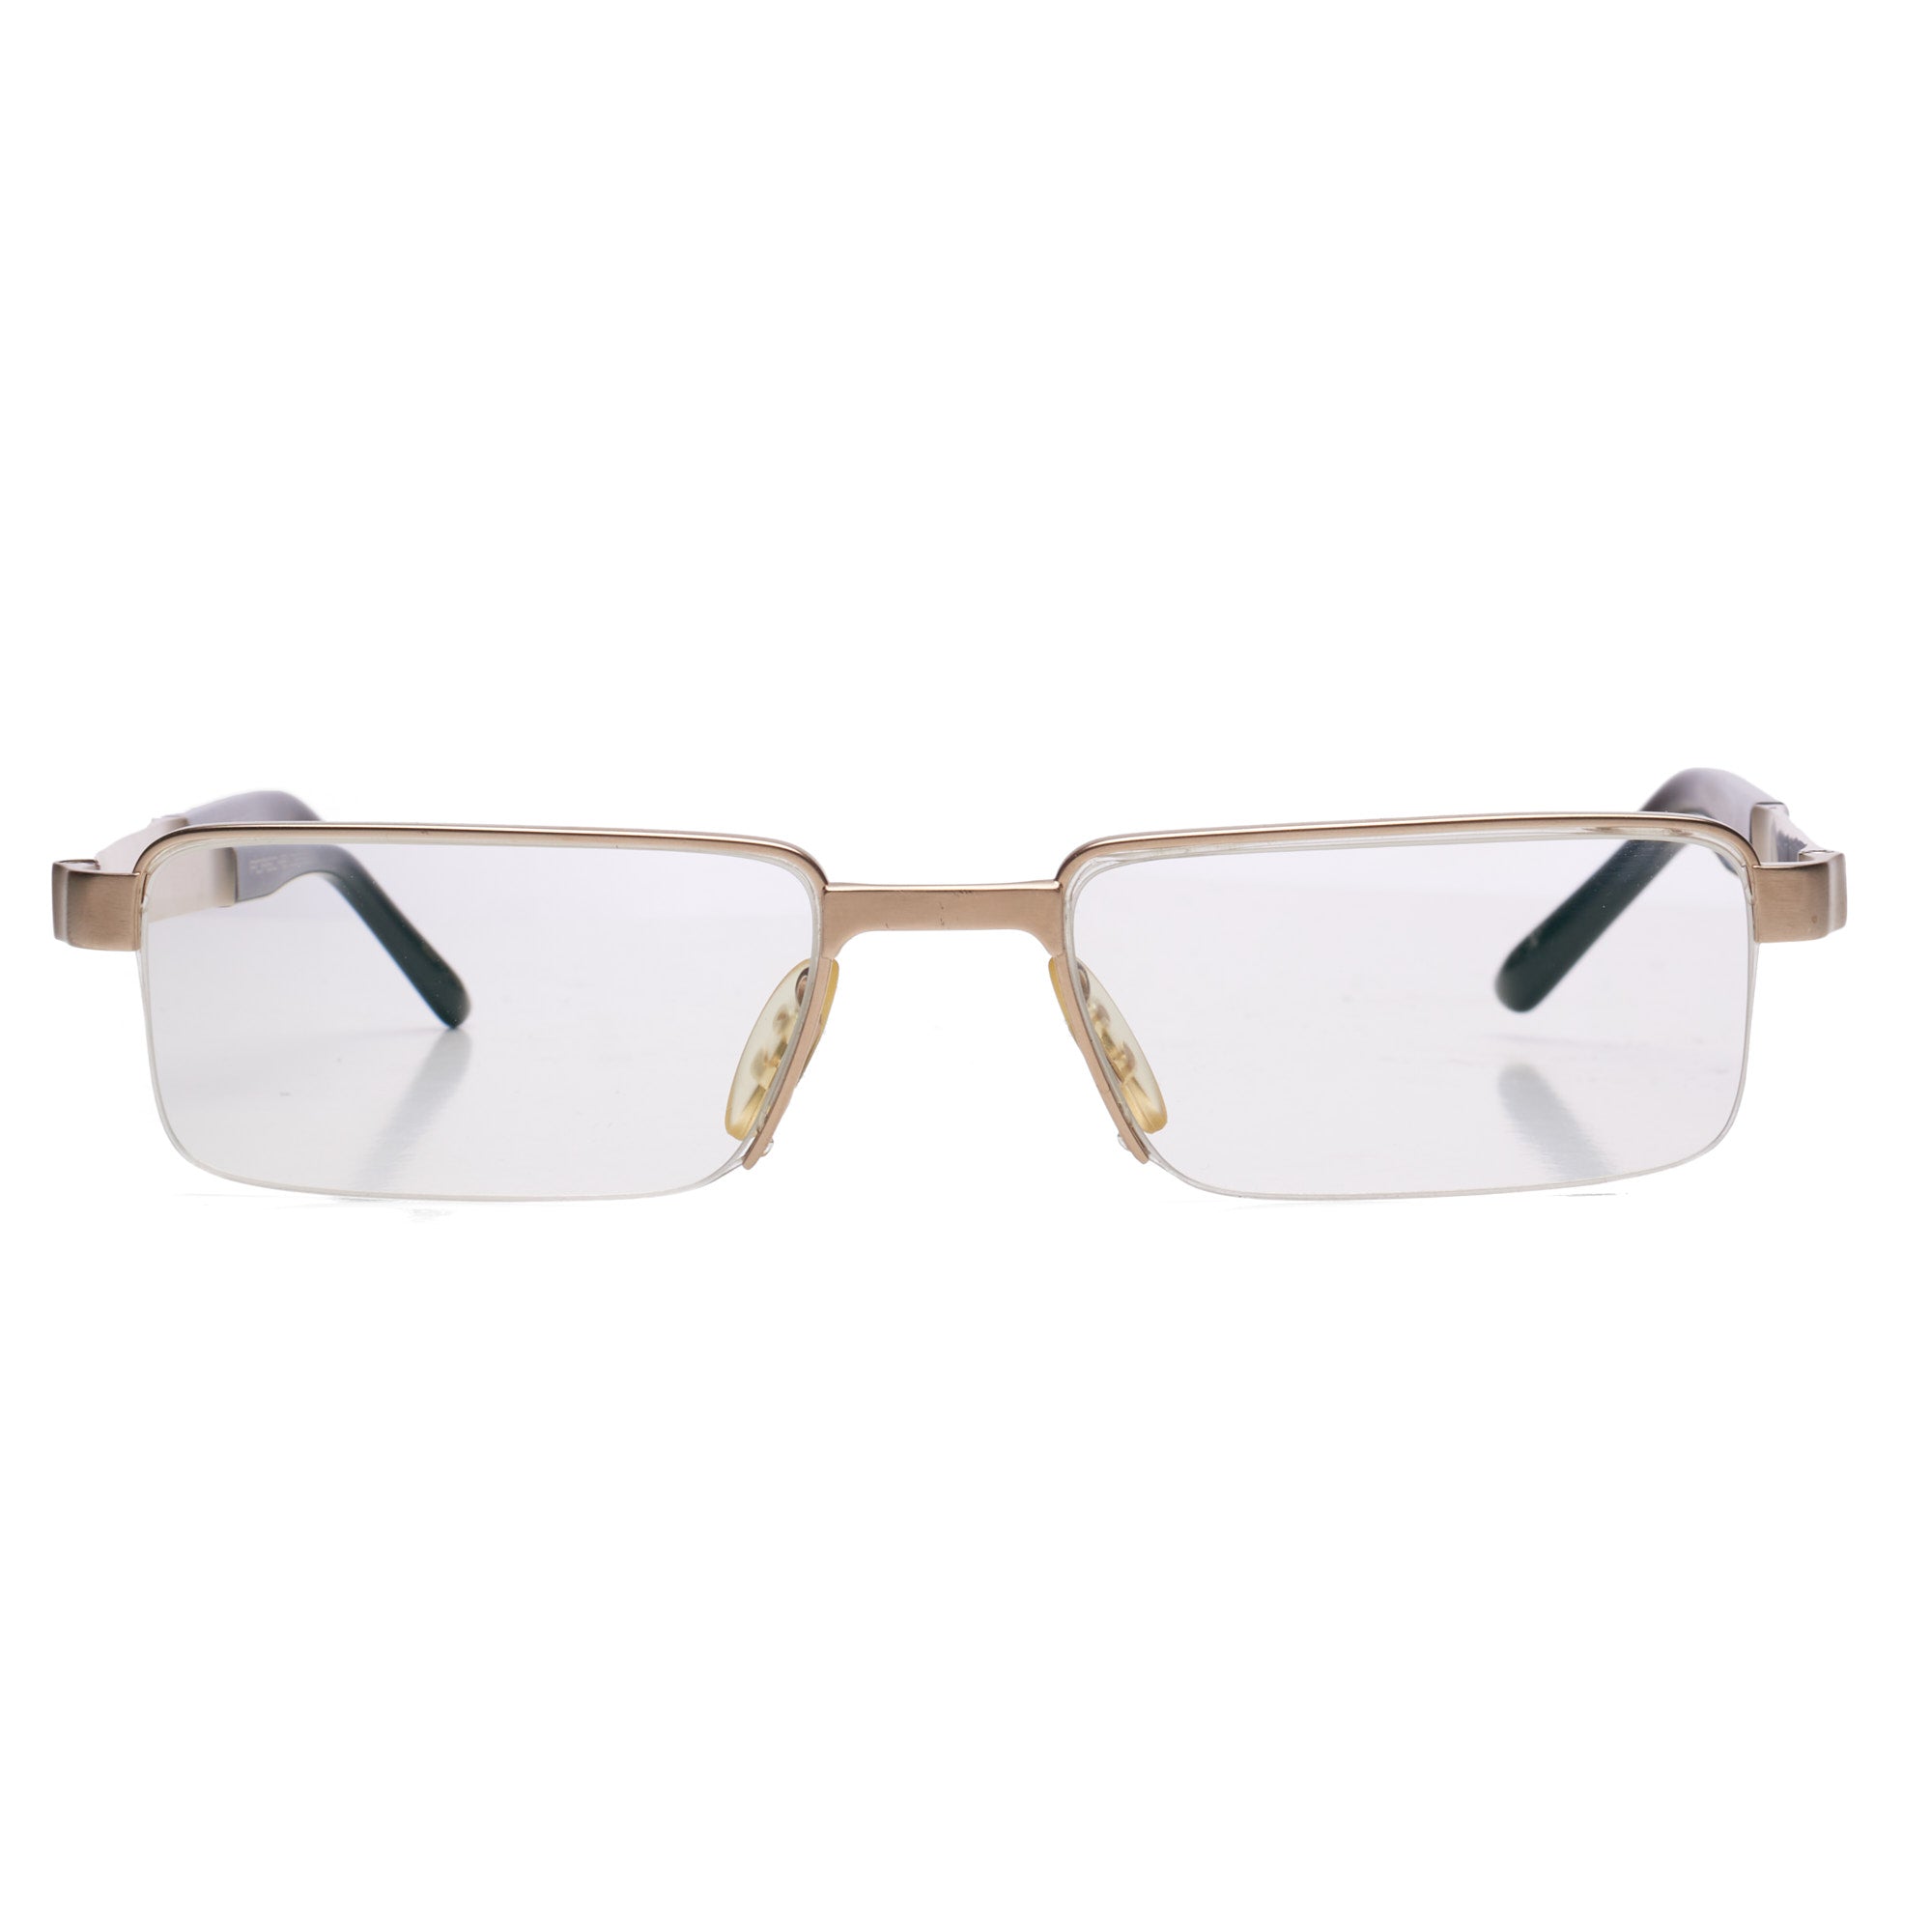 PORSCHE DESIGN P 8118 A Titanium Semi Rimless Rectangular Eyeglasses with Case PORSCHE DESIGN